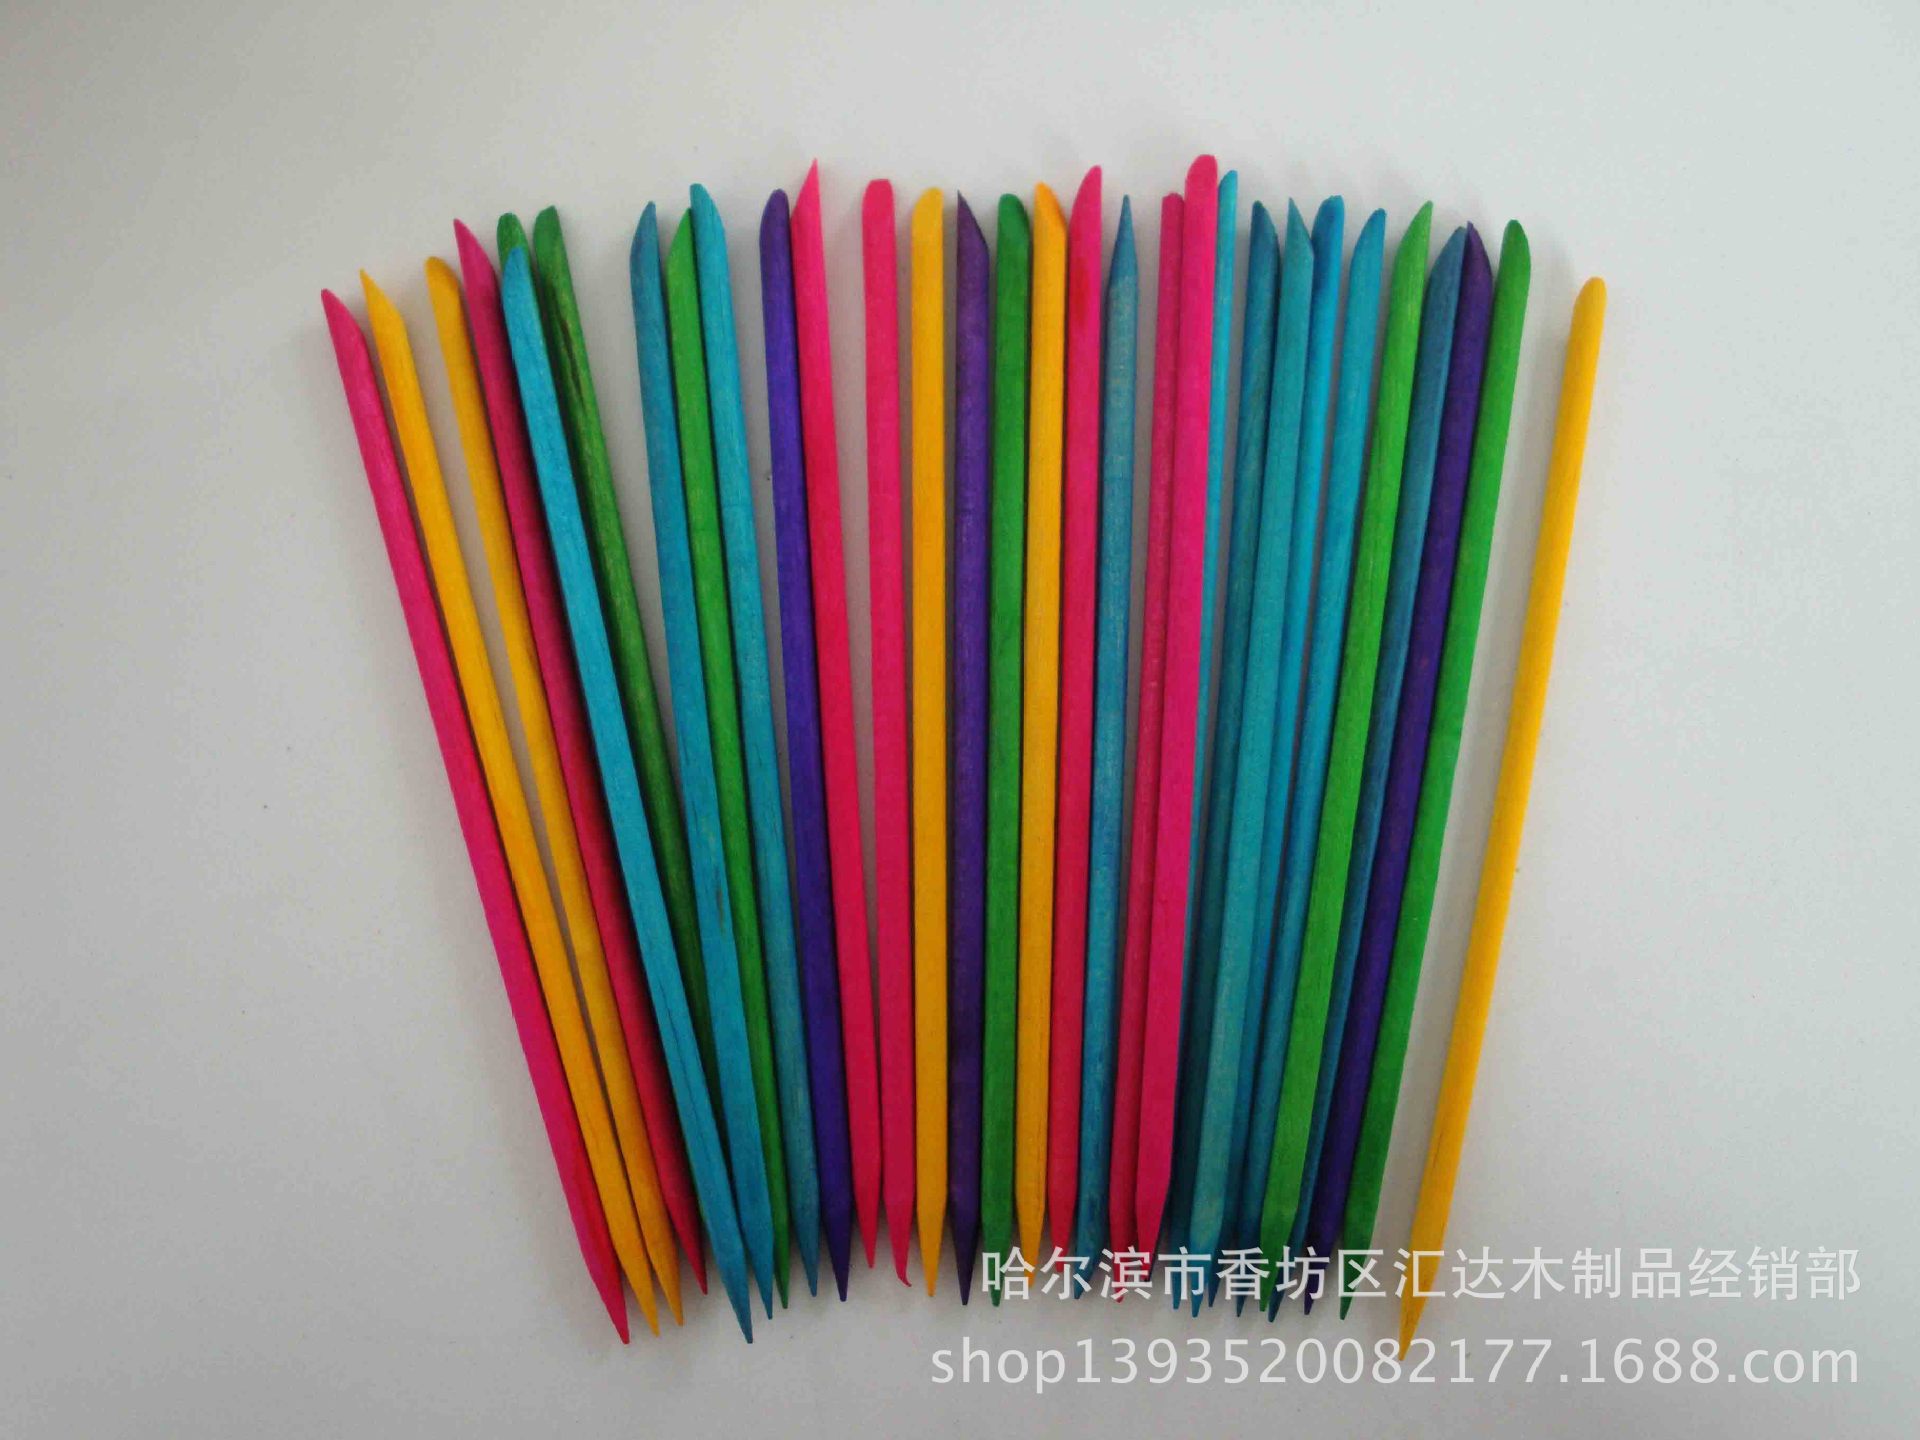 厂家供应棒糖棒 木质棒糖棒 环保磨尖棒糖棒 一次性棒糖棒示例图11